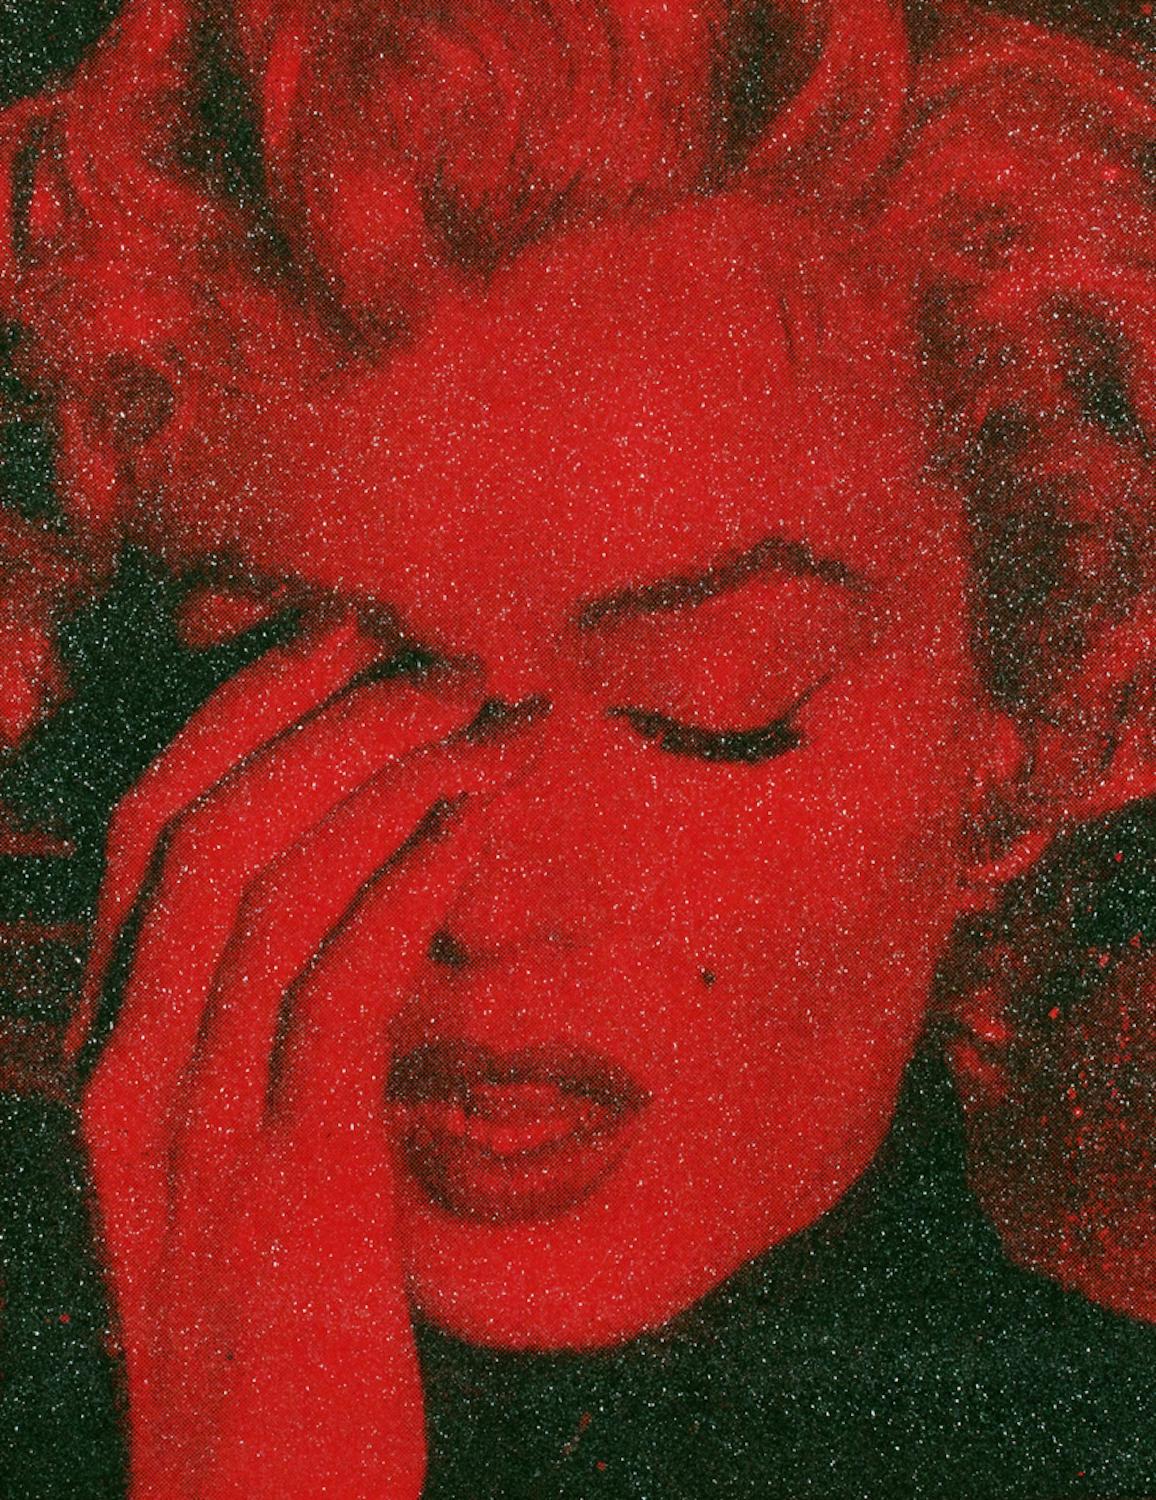 MARILYN CRYING - CALIFORNIA Blind Red Ltd Ed 3/4 - Diamond Dust on Linen/Framed